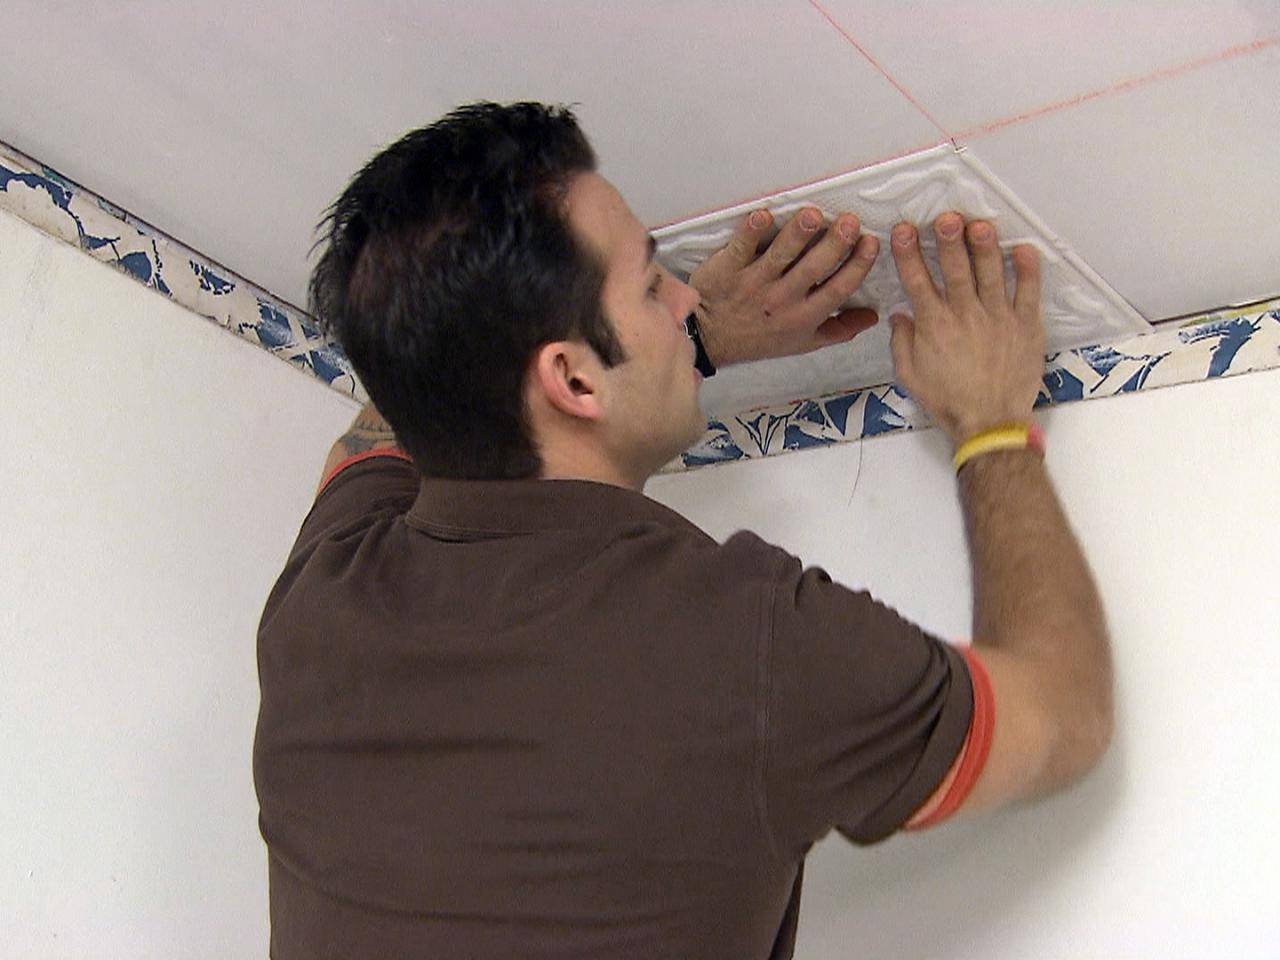 Отделка потолка: материалы и инструменты, как клеить плитку на потолок